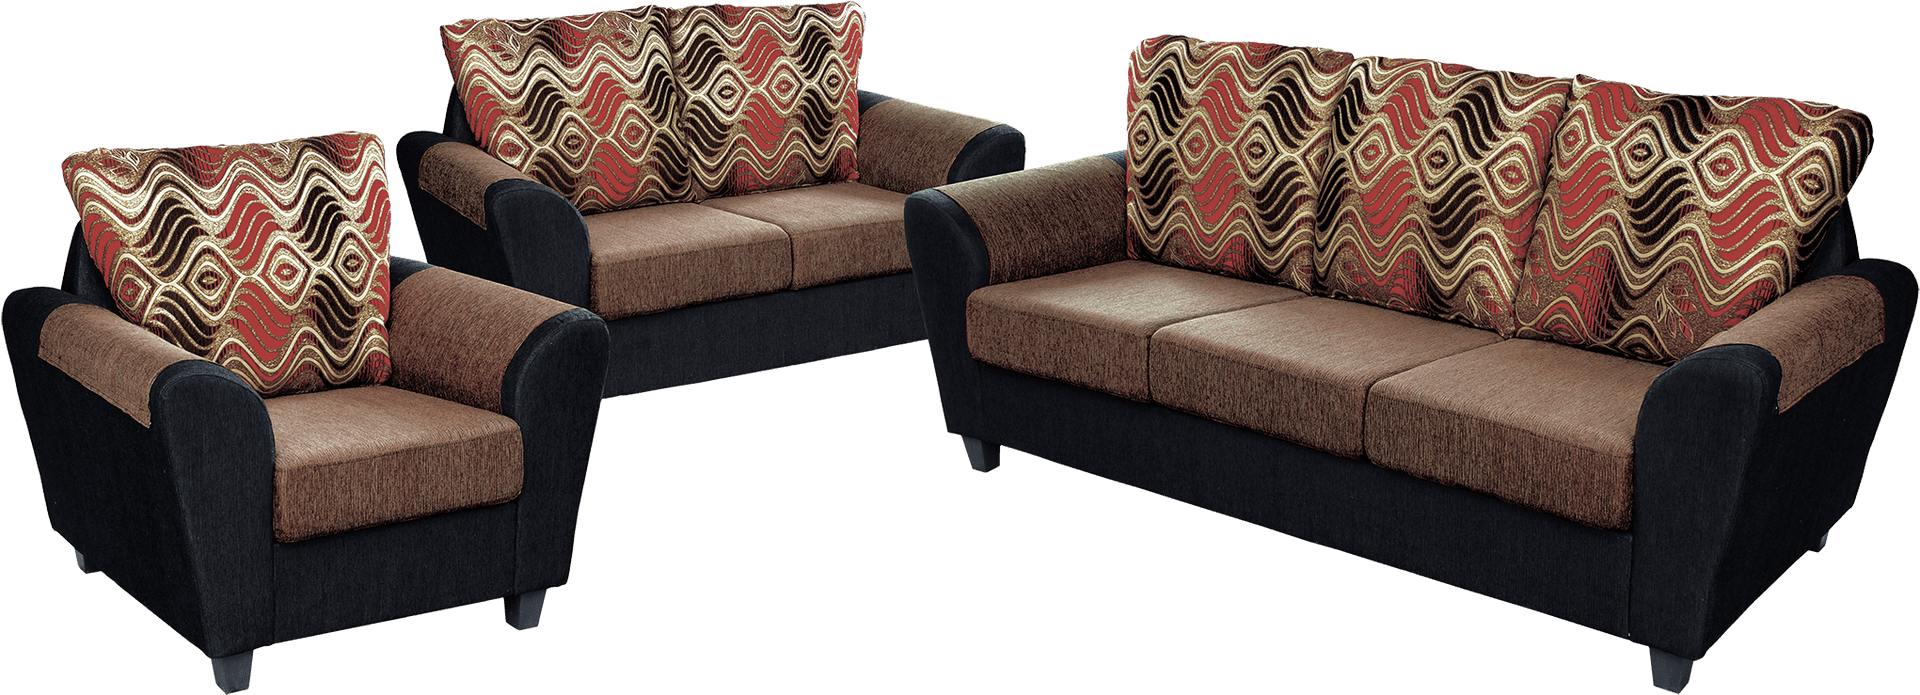 Modern Sofa Set Design PNG image